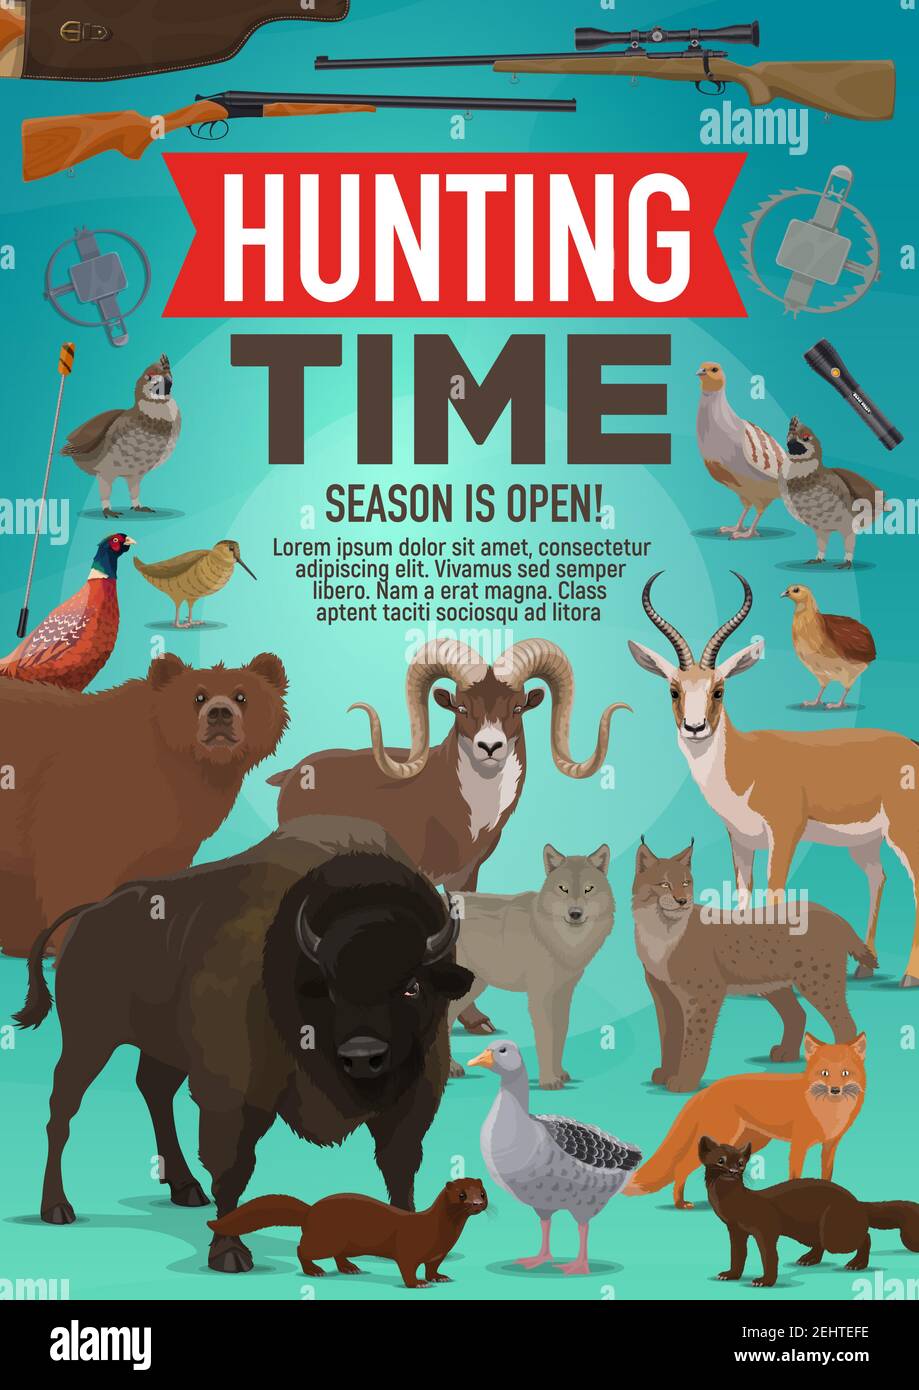 Partez à la chasse de l'affiche de saison ouverte d'animaux sauvages et d'oiseaux forestiers pour une aventure de safari en Afrique. Dessin vectoriel de fusil de chasse pour buffle, mouflon de montagne o Illustration de Vecteur